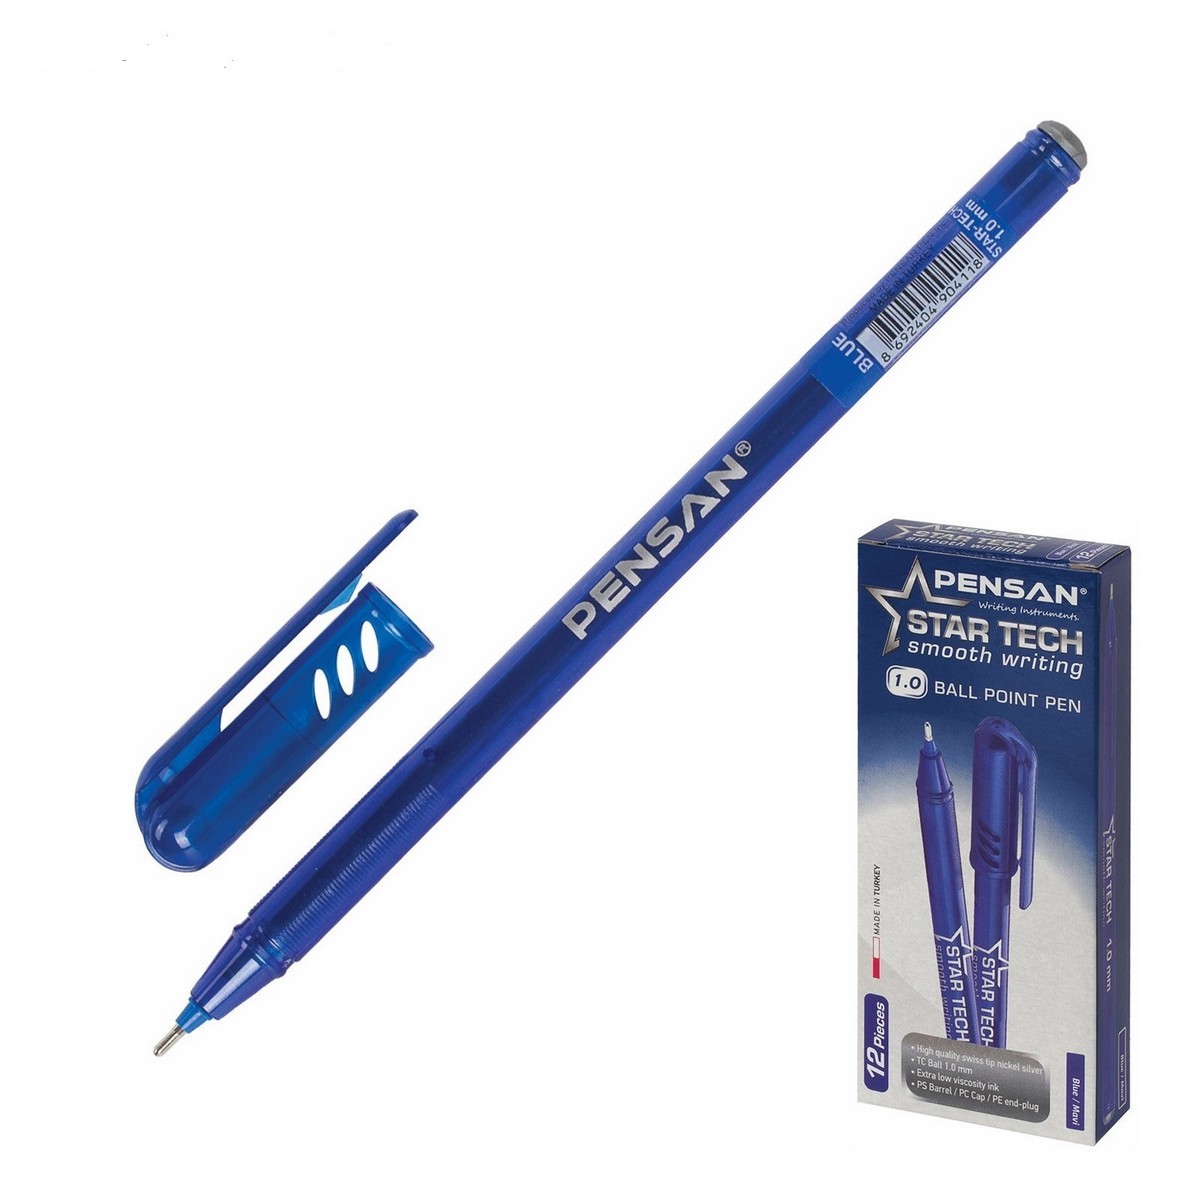 Ручка шариковая Pensan Star Tech 3494034, синяя, 1 мм, 1 шт.